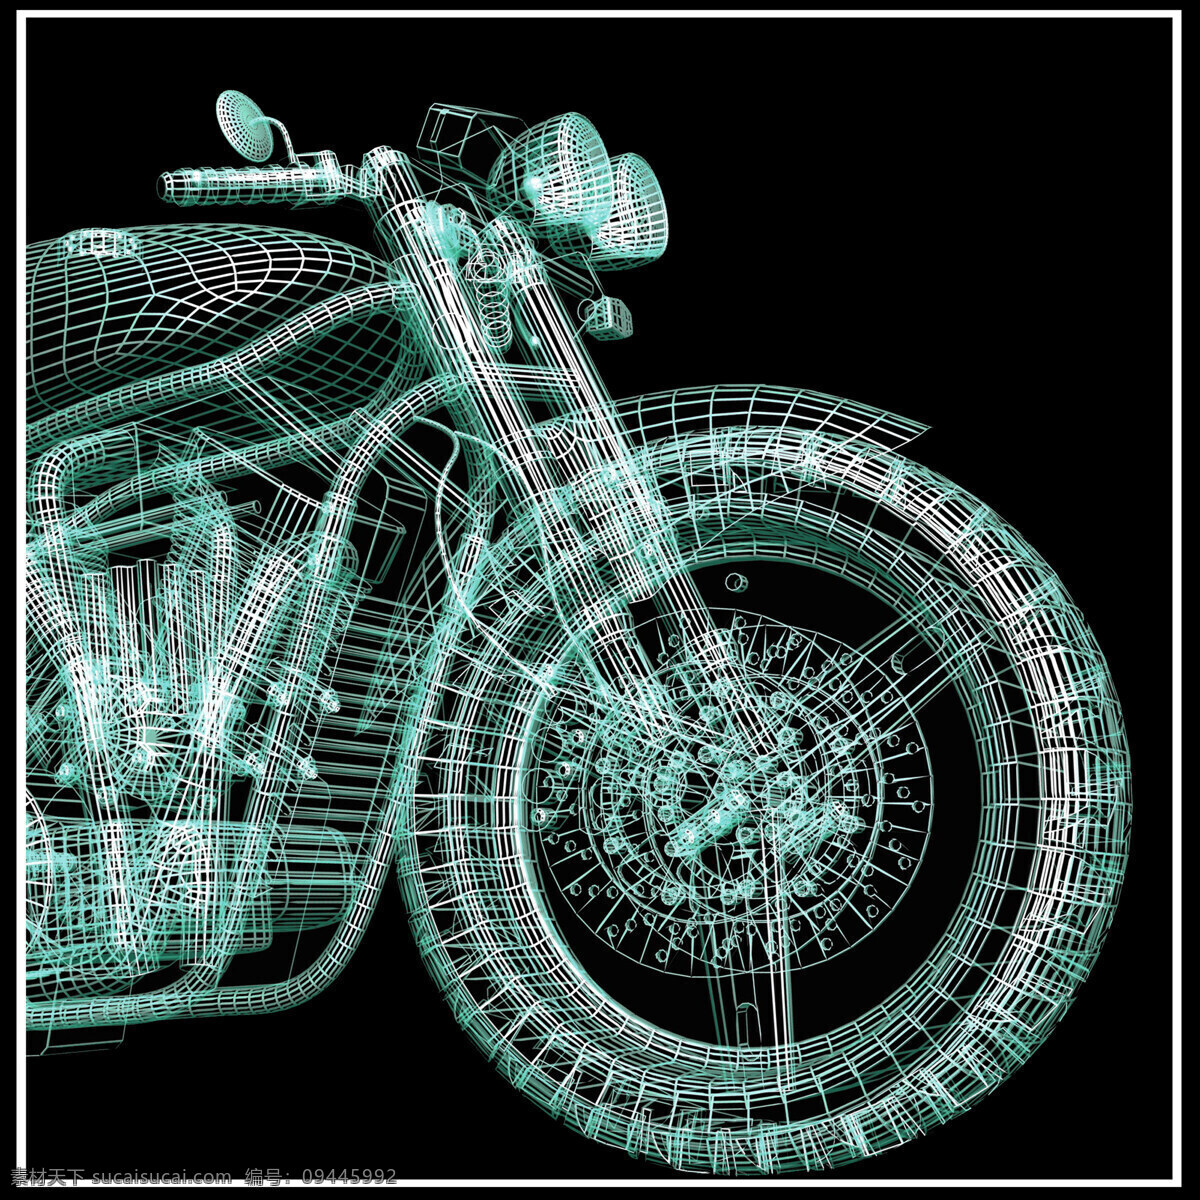 绿色 立体 摩托车 3d摩托车 立体摩托车 科技摩托车 线条摩托车 机车 赛车 交通工具 其他类别 现代科技